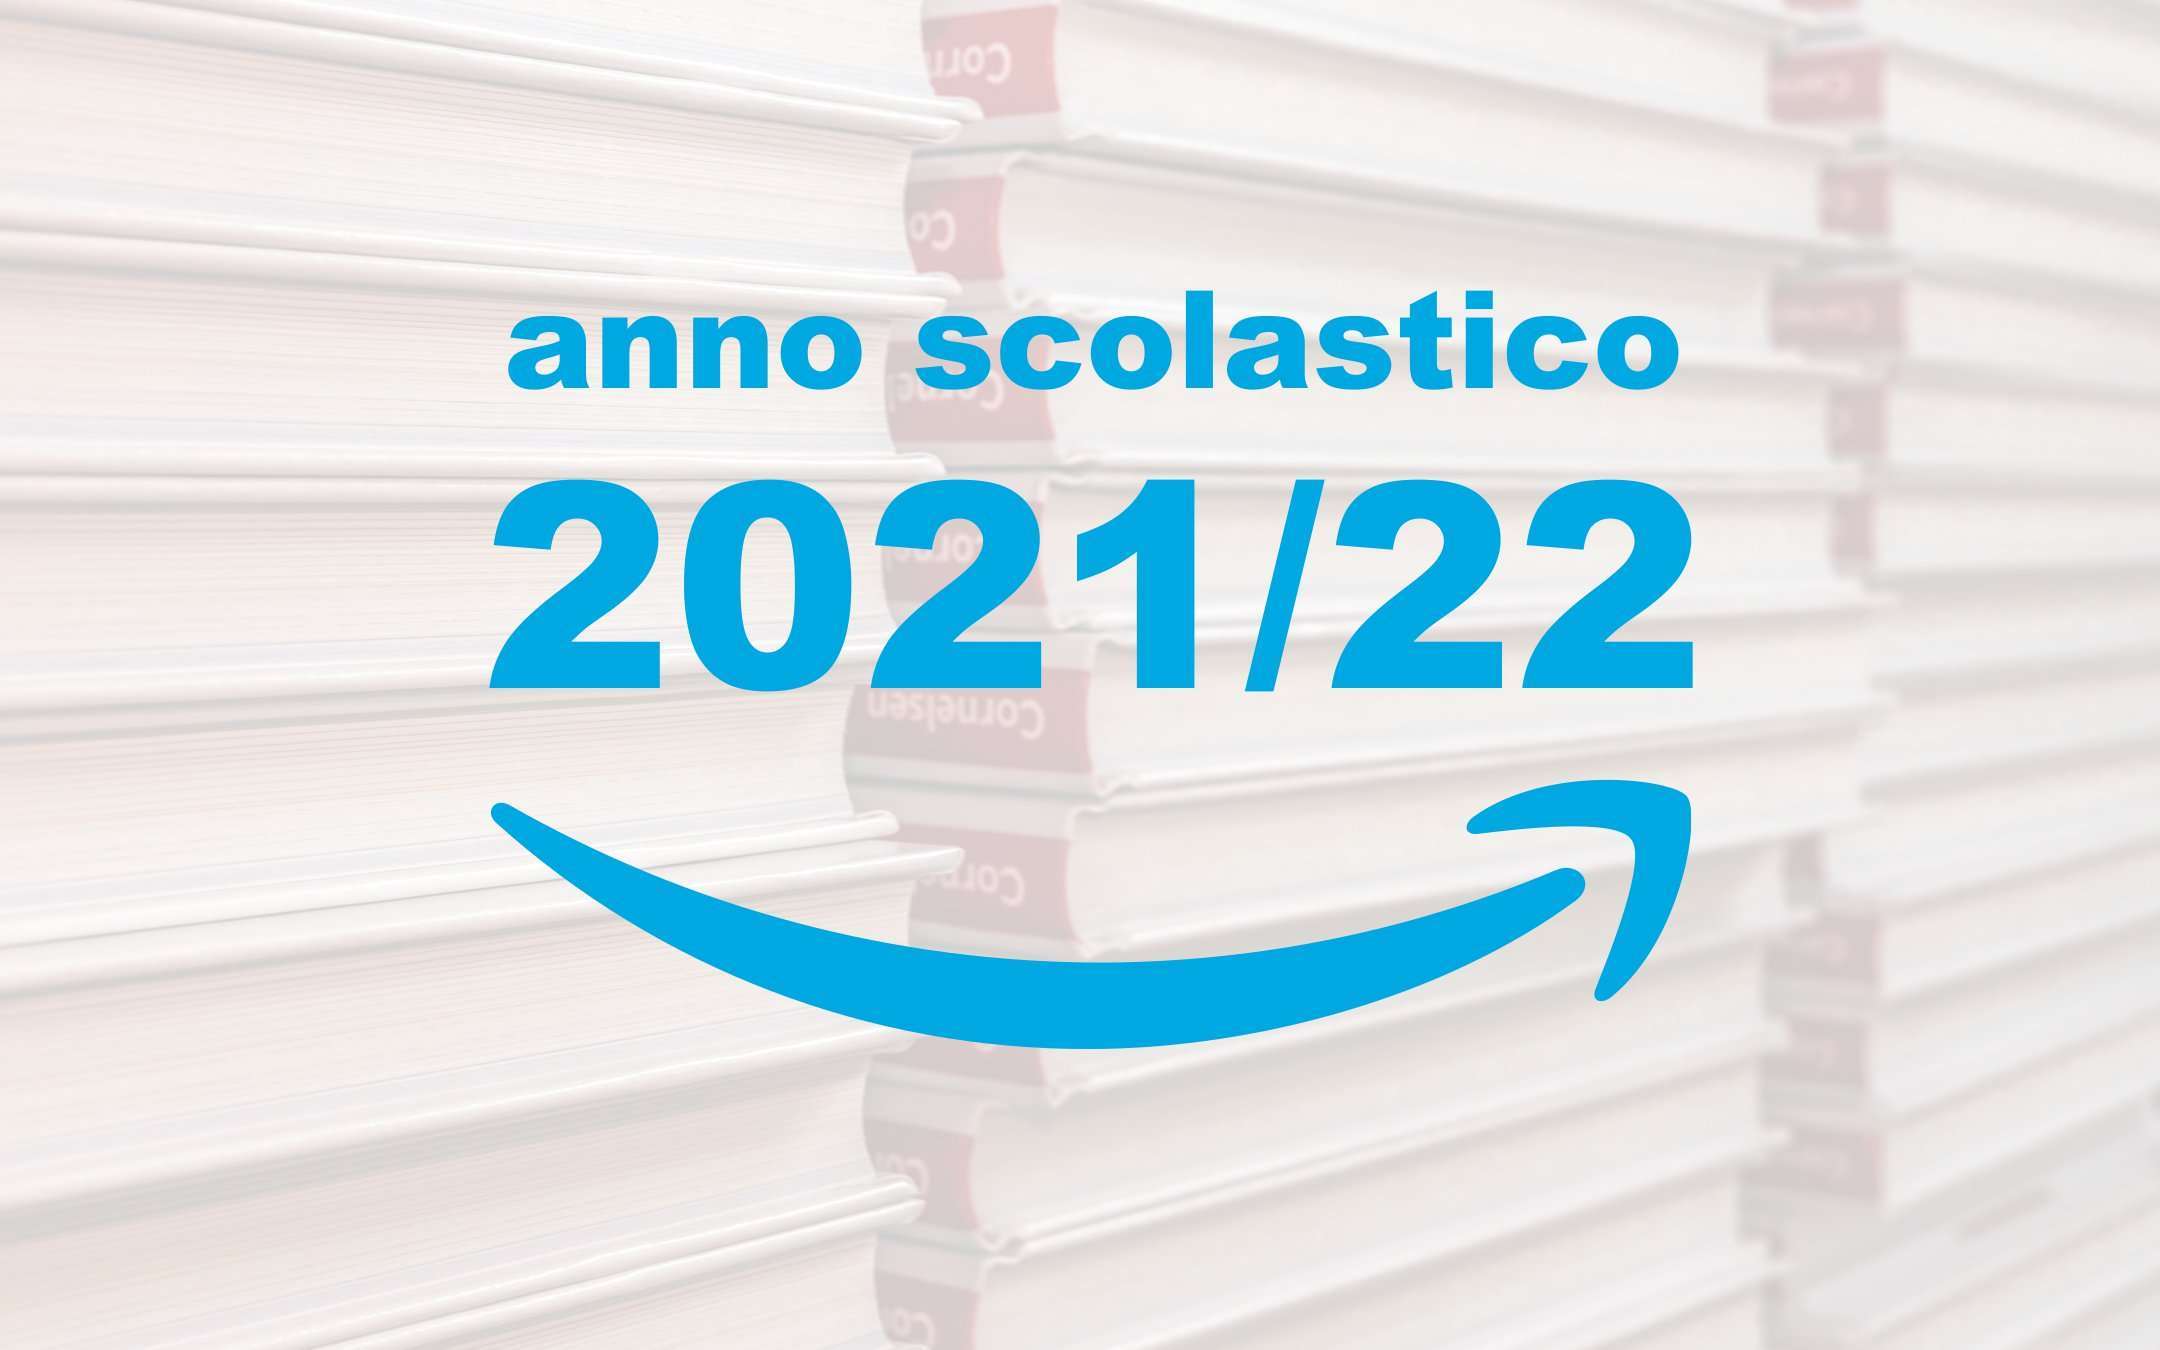 Libri scolastici 2021/22: come acquistarli su Amazon